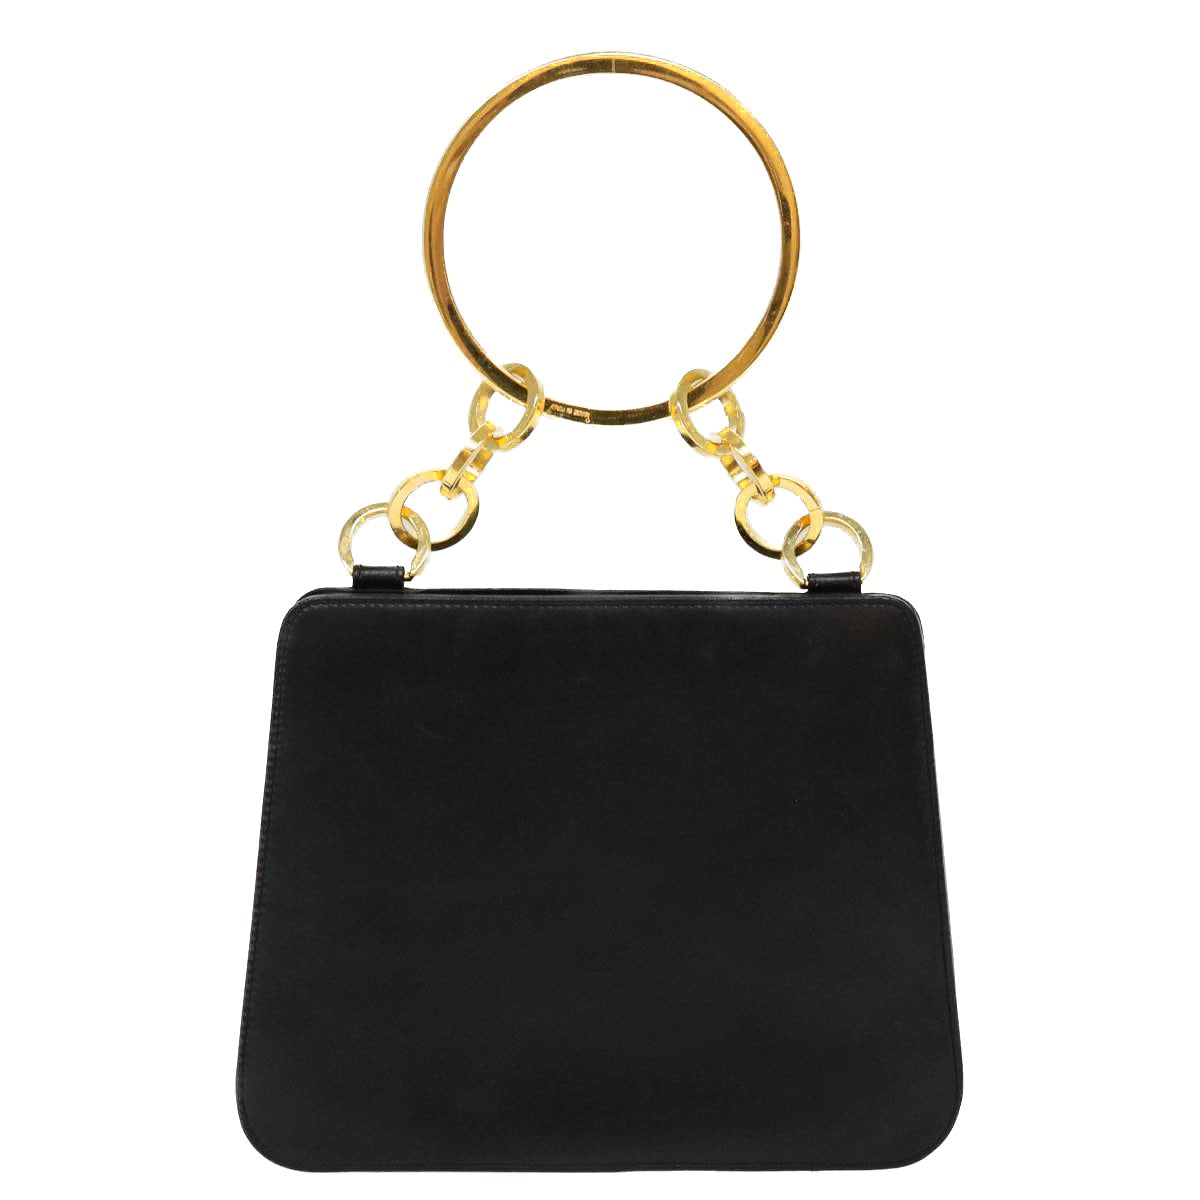 Salvatore Ferragamo Hand Bag Leather Black Auth 39142 - 0